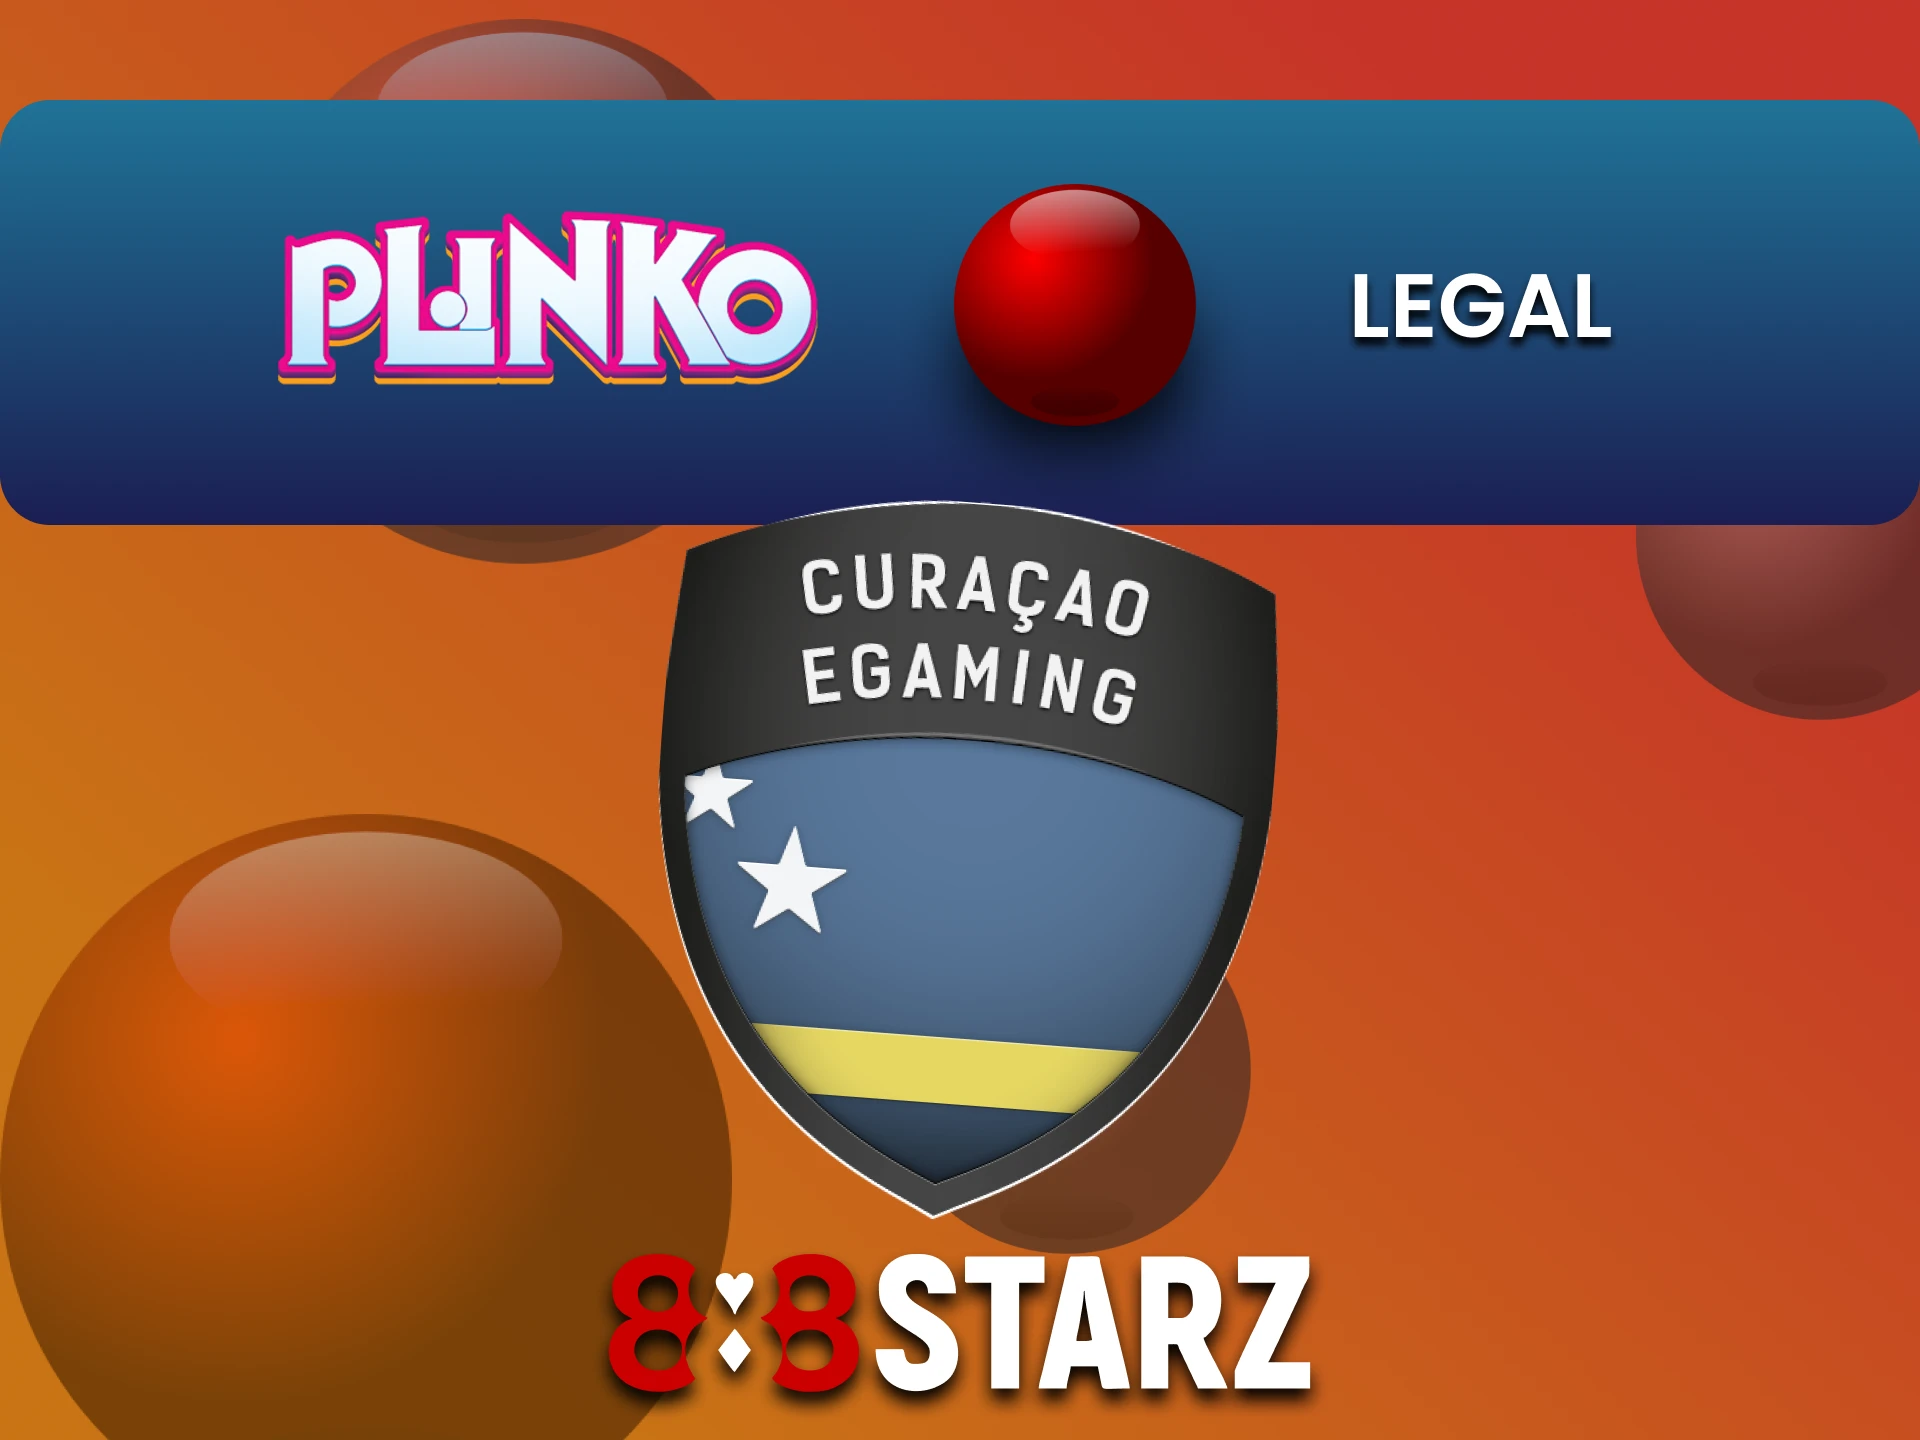 888starz is a legal site to play Plinko.